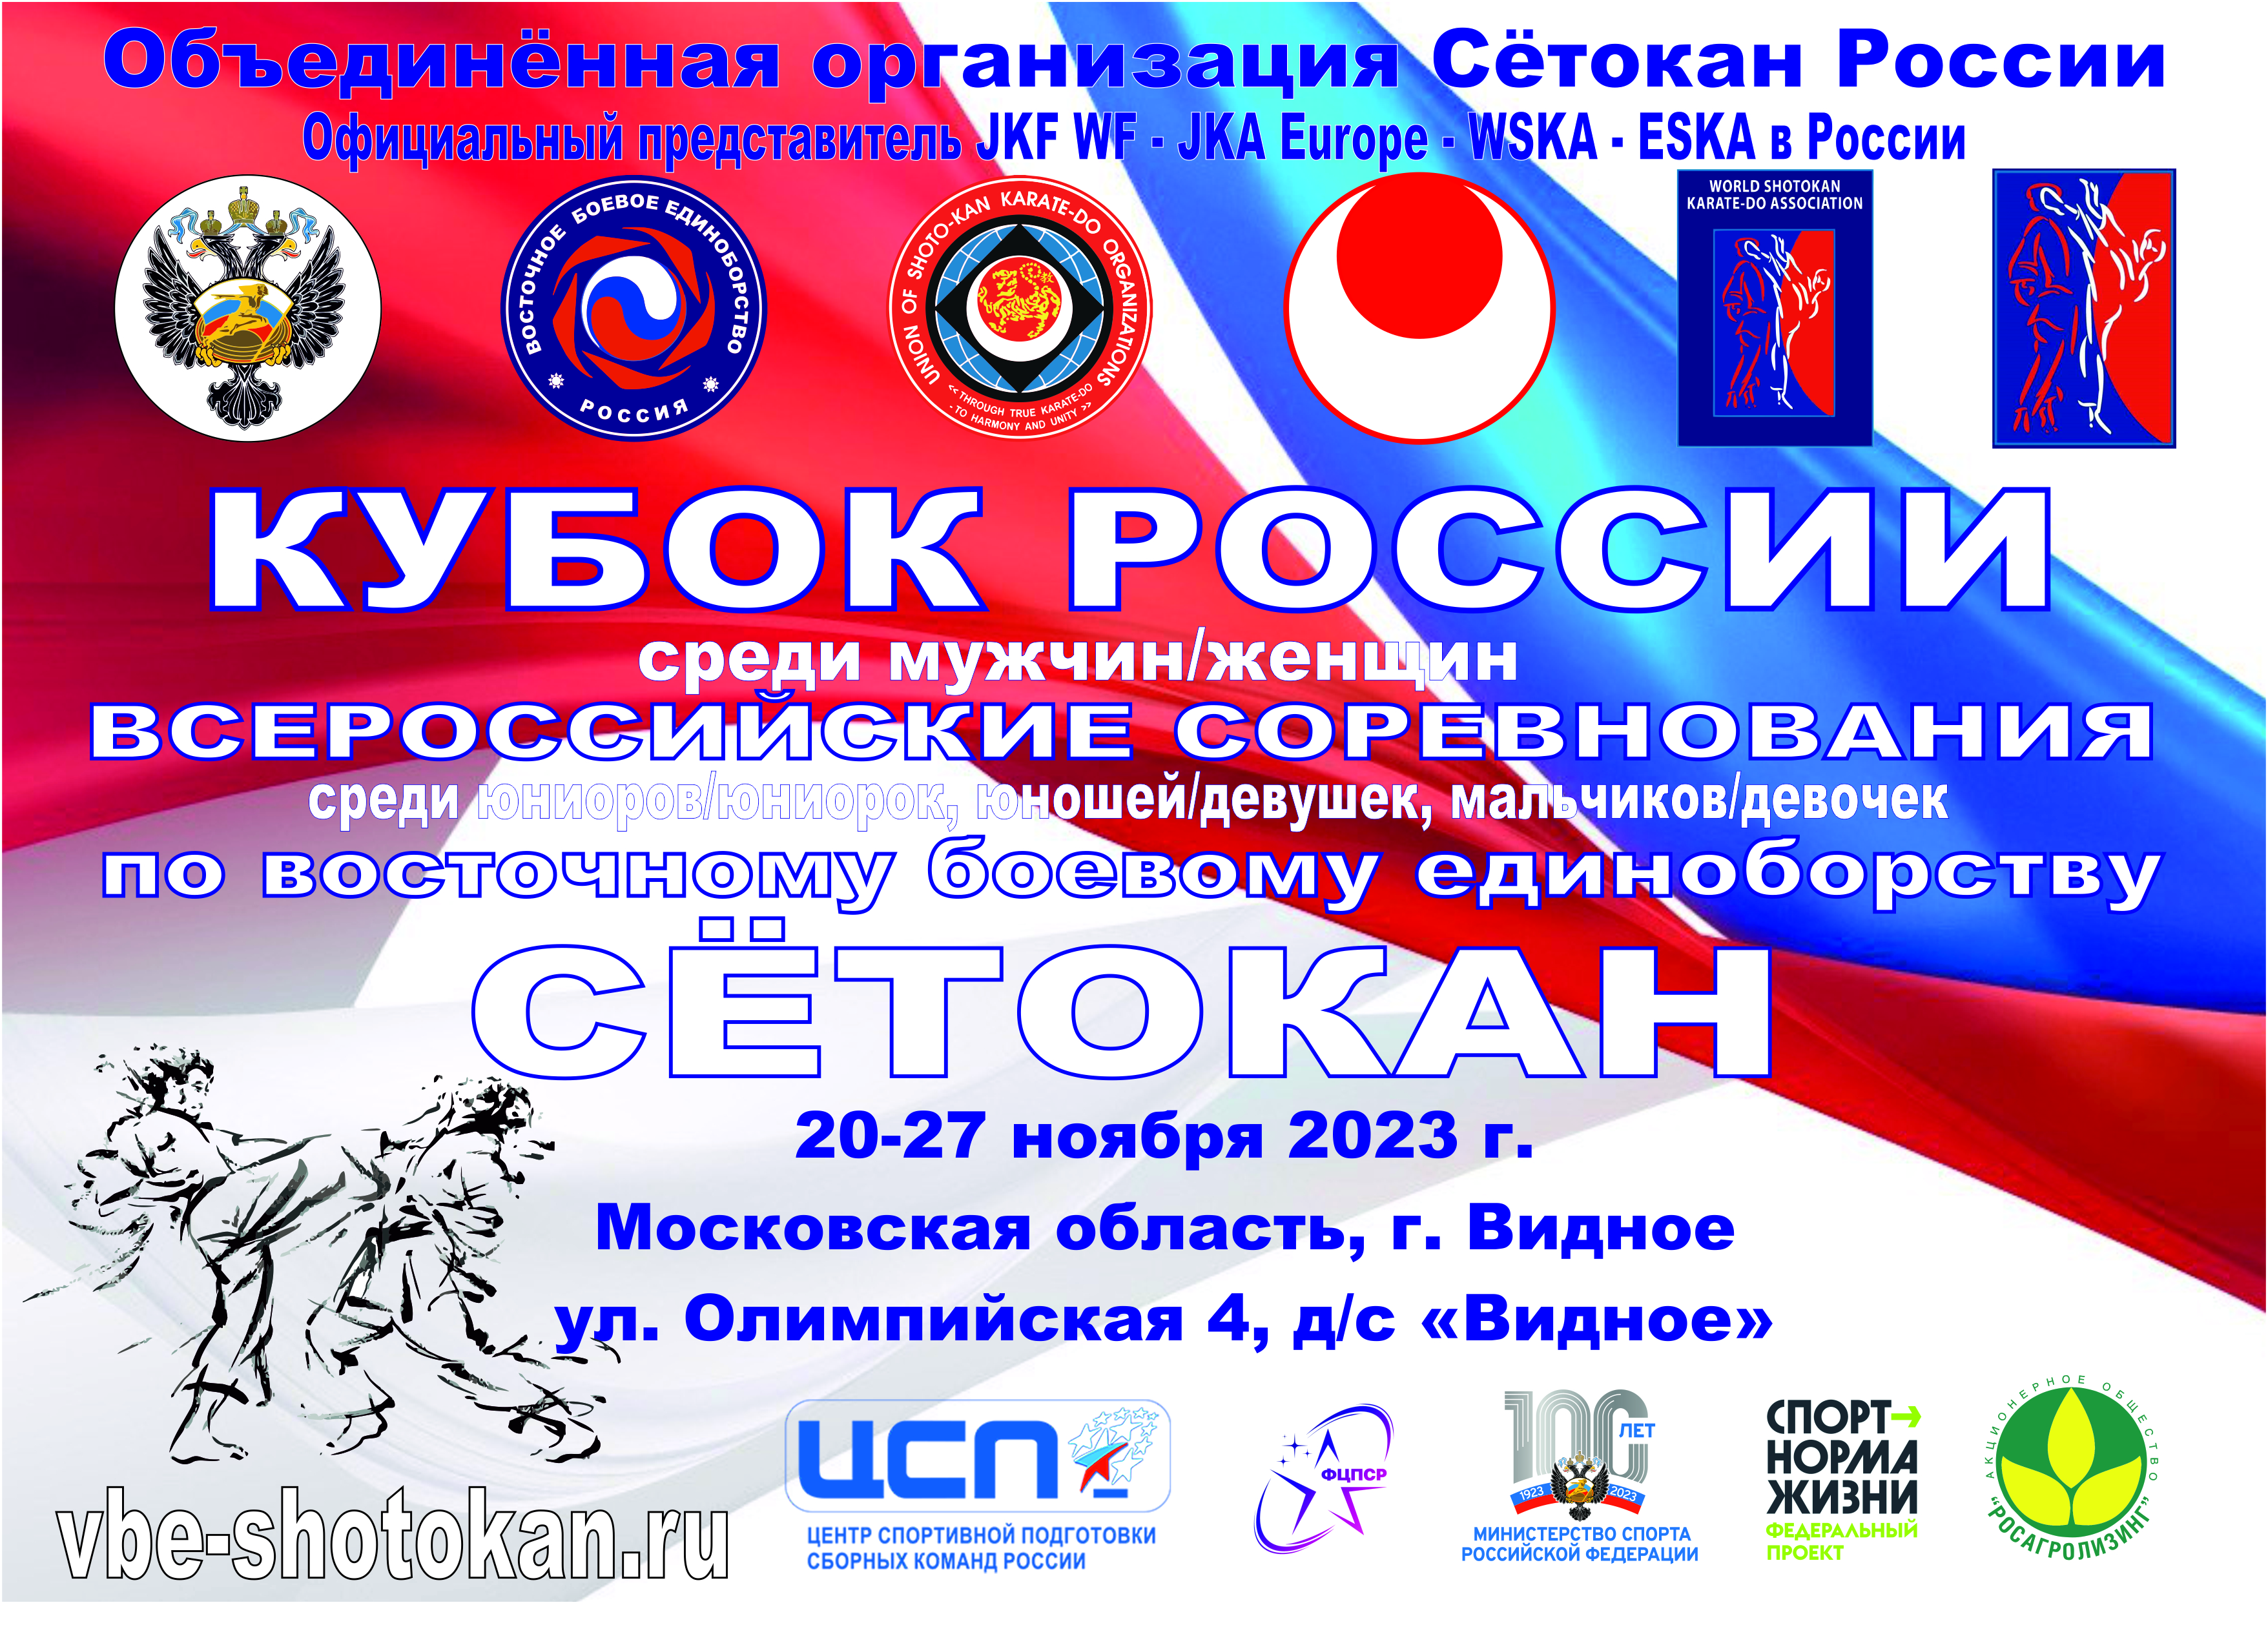 Кубок России и всероссийские соревнования 2023